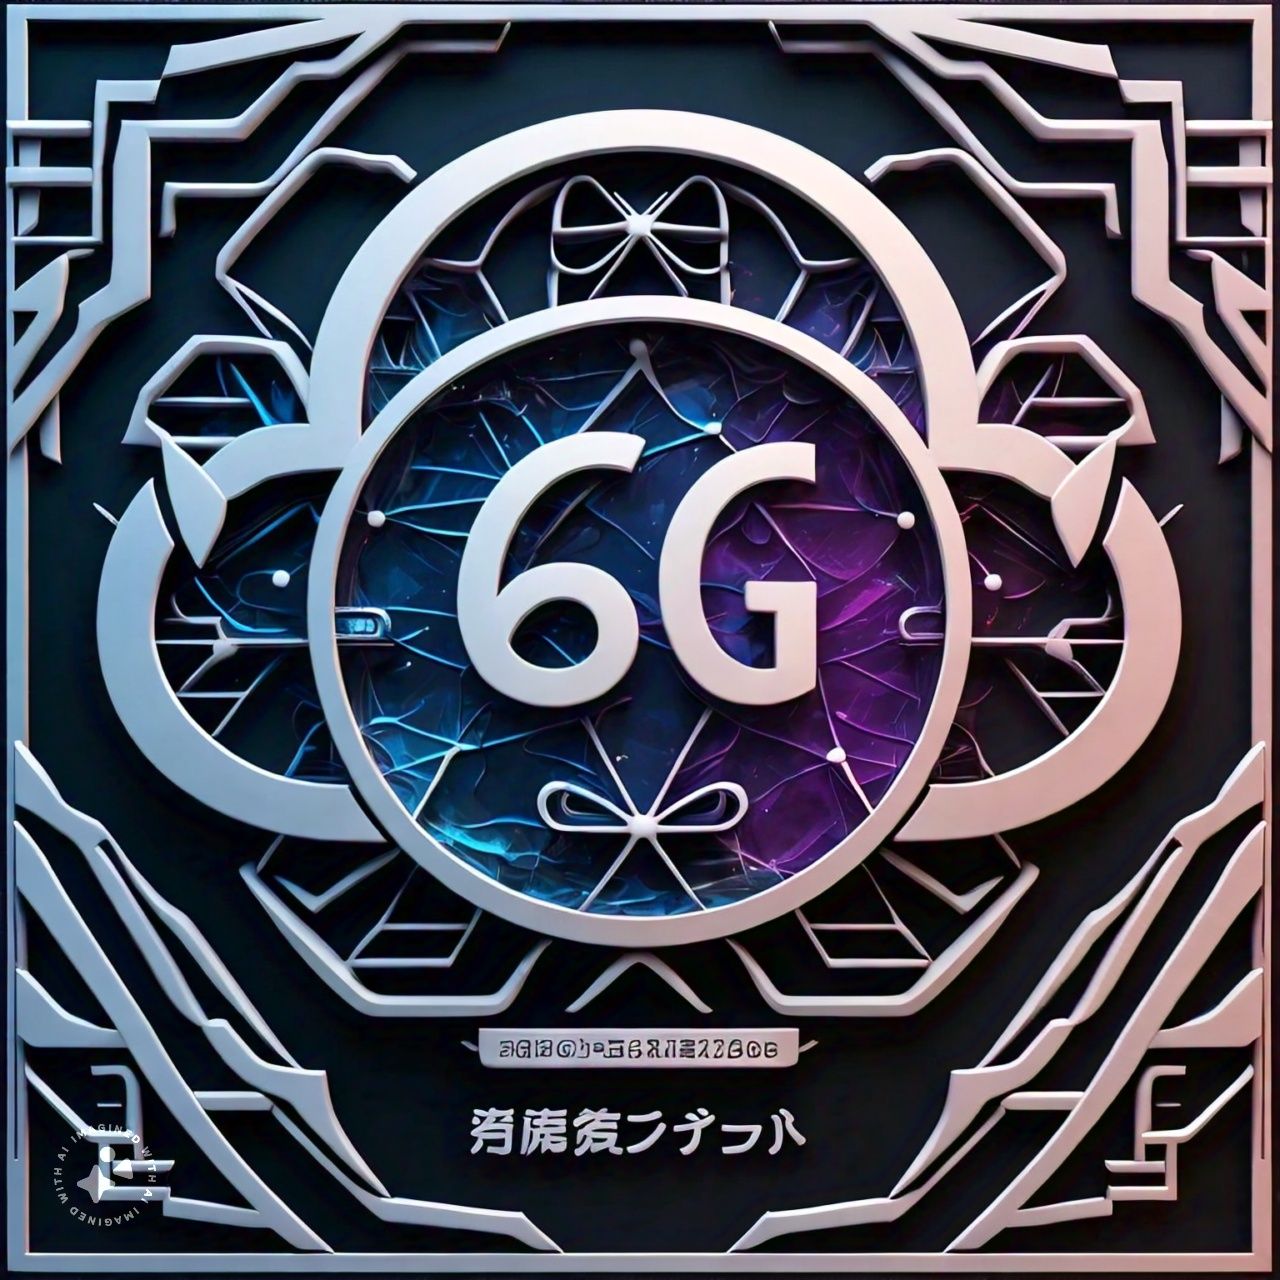 6G Technology